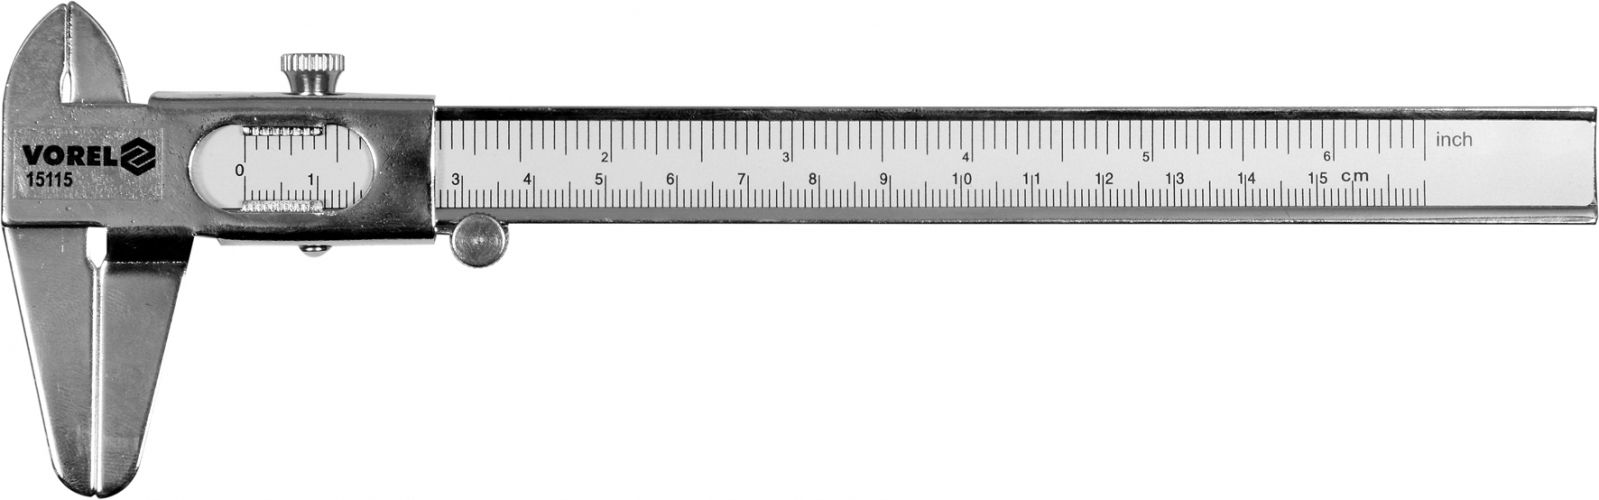 Штангенциркуль VOREL : l= 150 мм, з метричною і дюймовою шкалами арт.15115 